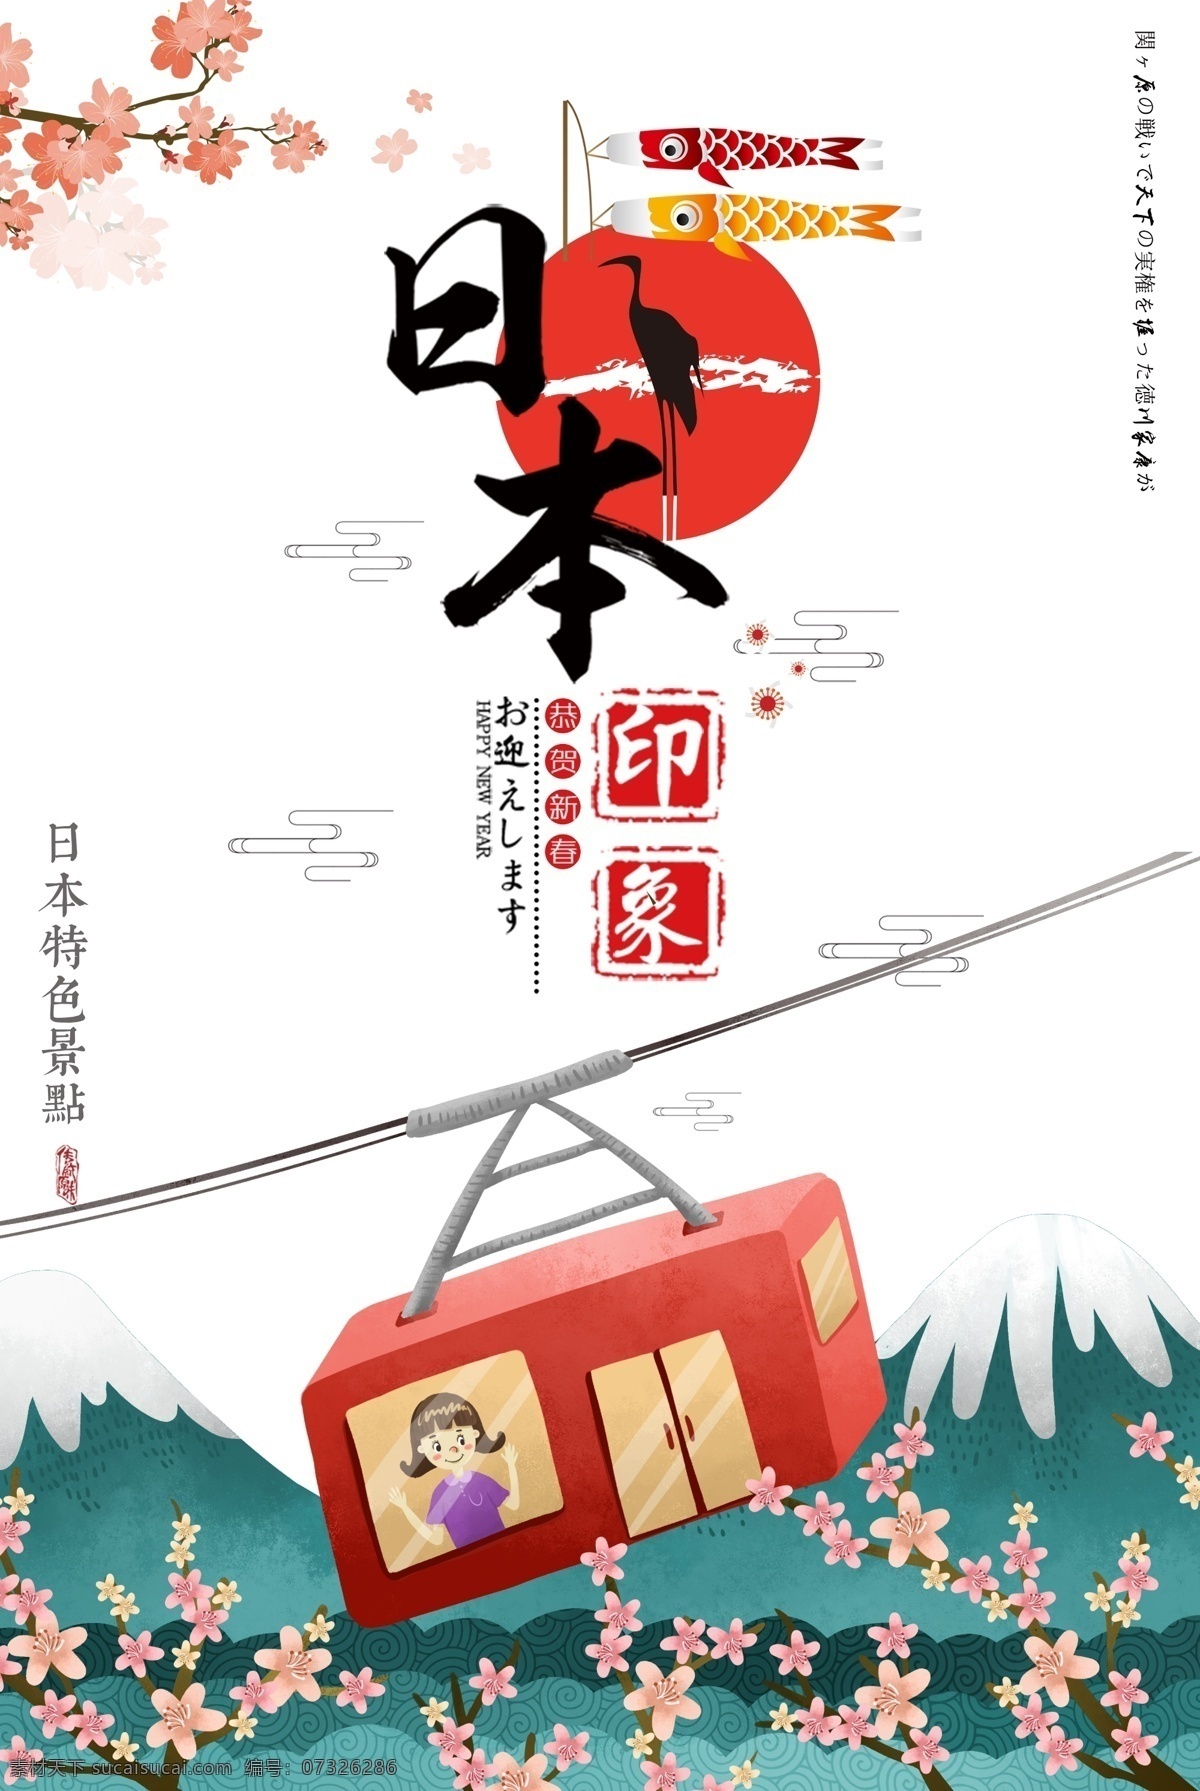 唯美 日本旅游 海报 樱花 唯美旅游海报 日本 富士山 樱花海报 旅游海报设计 旅游